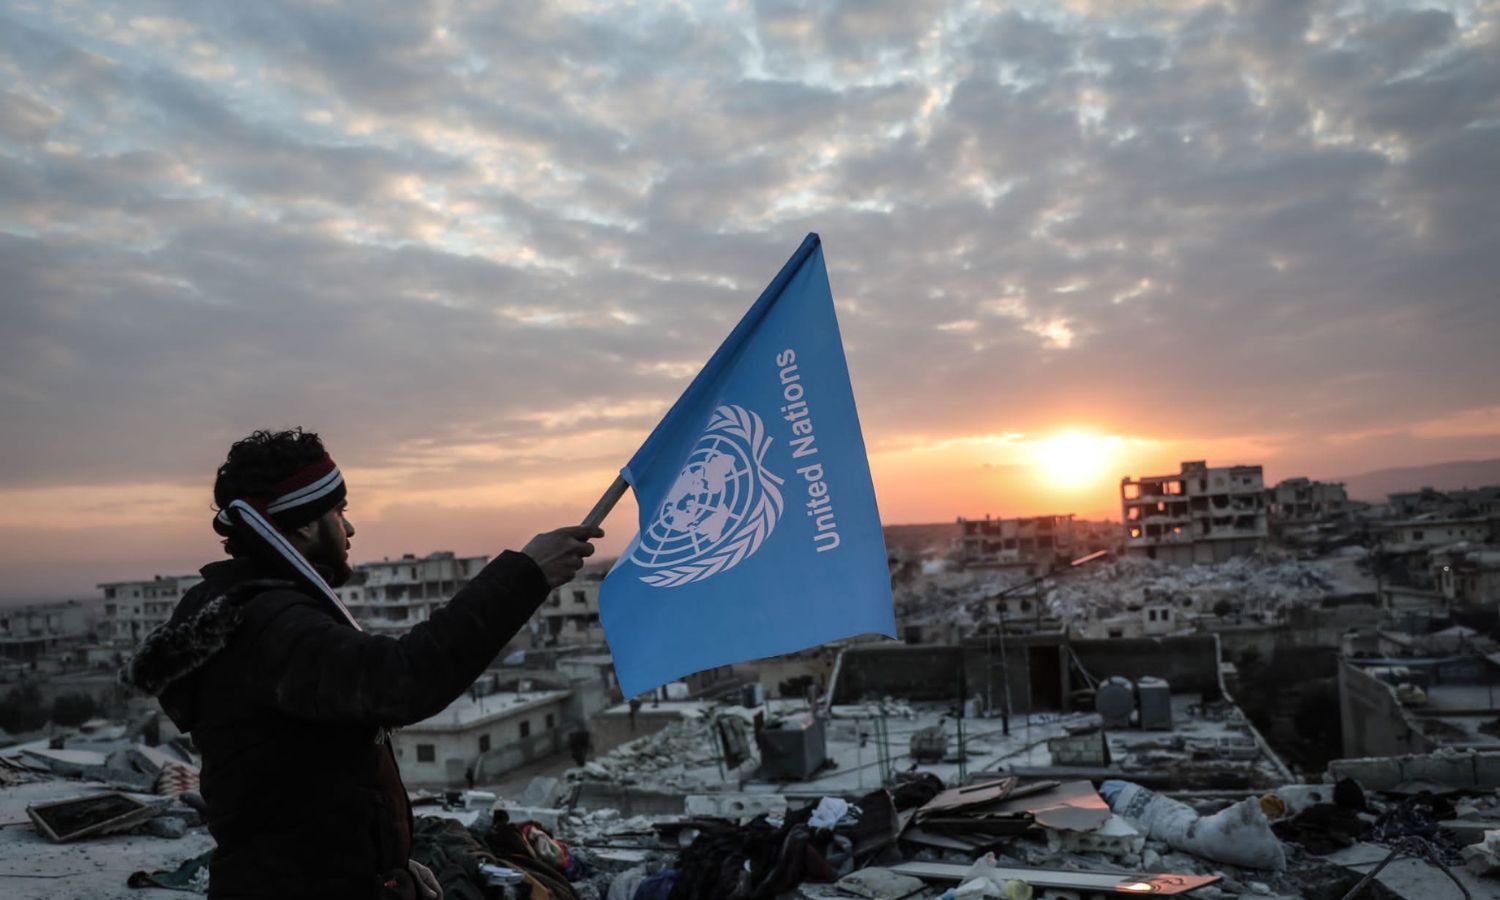 شاب يحمل علم الأمم المتحدة وهو مقلوب أعلى ركام بناء مدمّر في بلدة جنديرس بريف حلب الشمالي استنكارًا لتأخر الاستجابة إثر زلزال ضرب مناطق تركيا وأربع سورية- 11 شباط 2023 (متداول/ وليد أكتع)